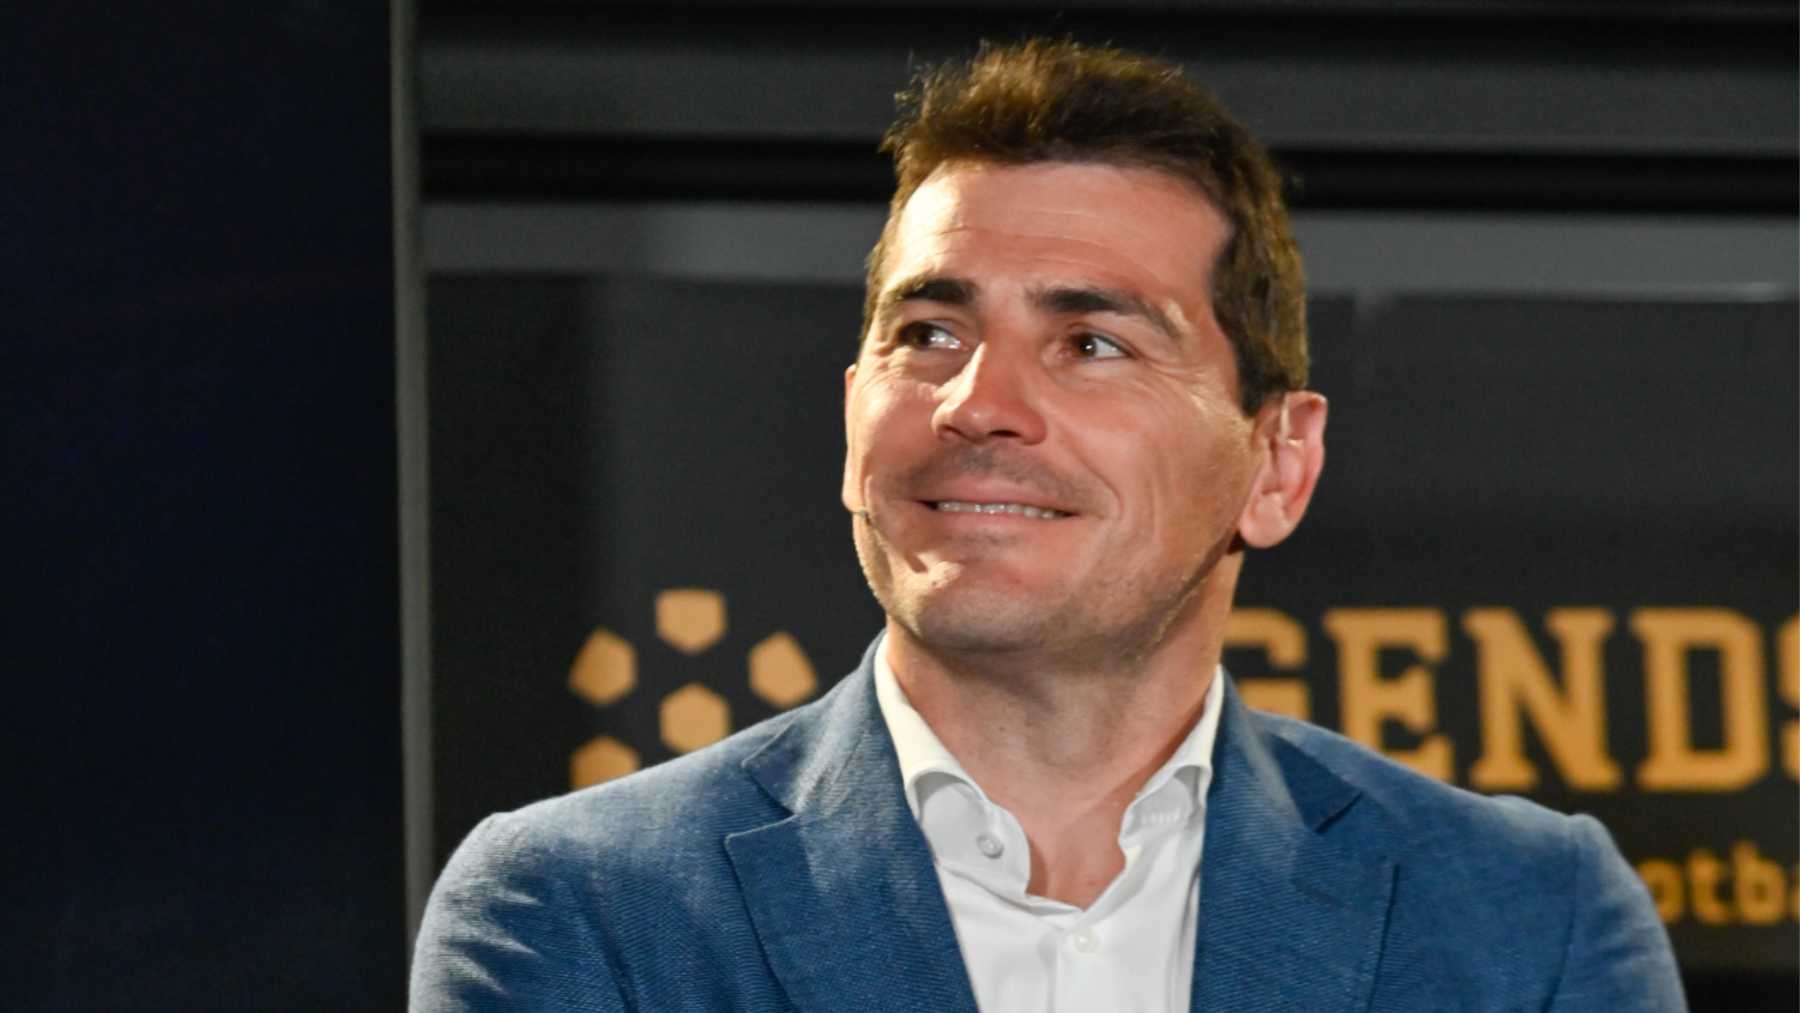 Iker Casillas estalla y pide que cierren el programa de María Patiño: “Es acoso”